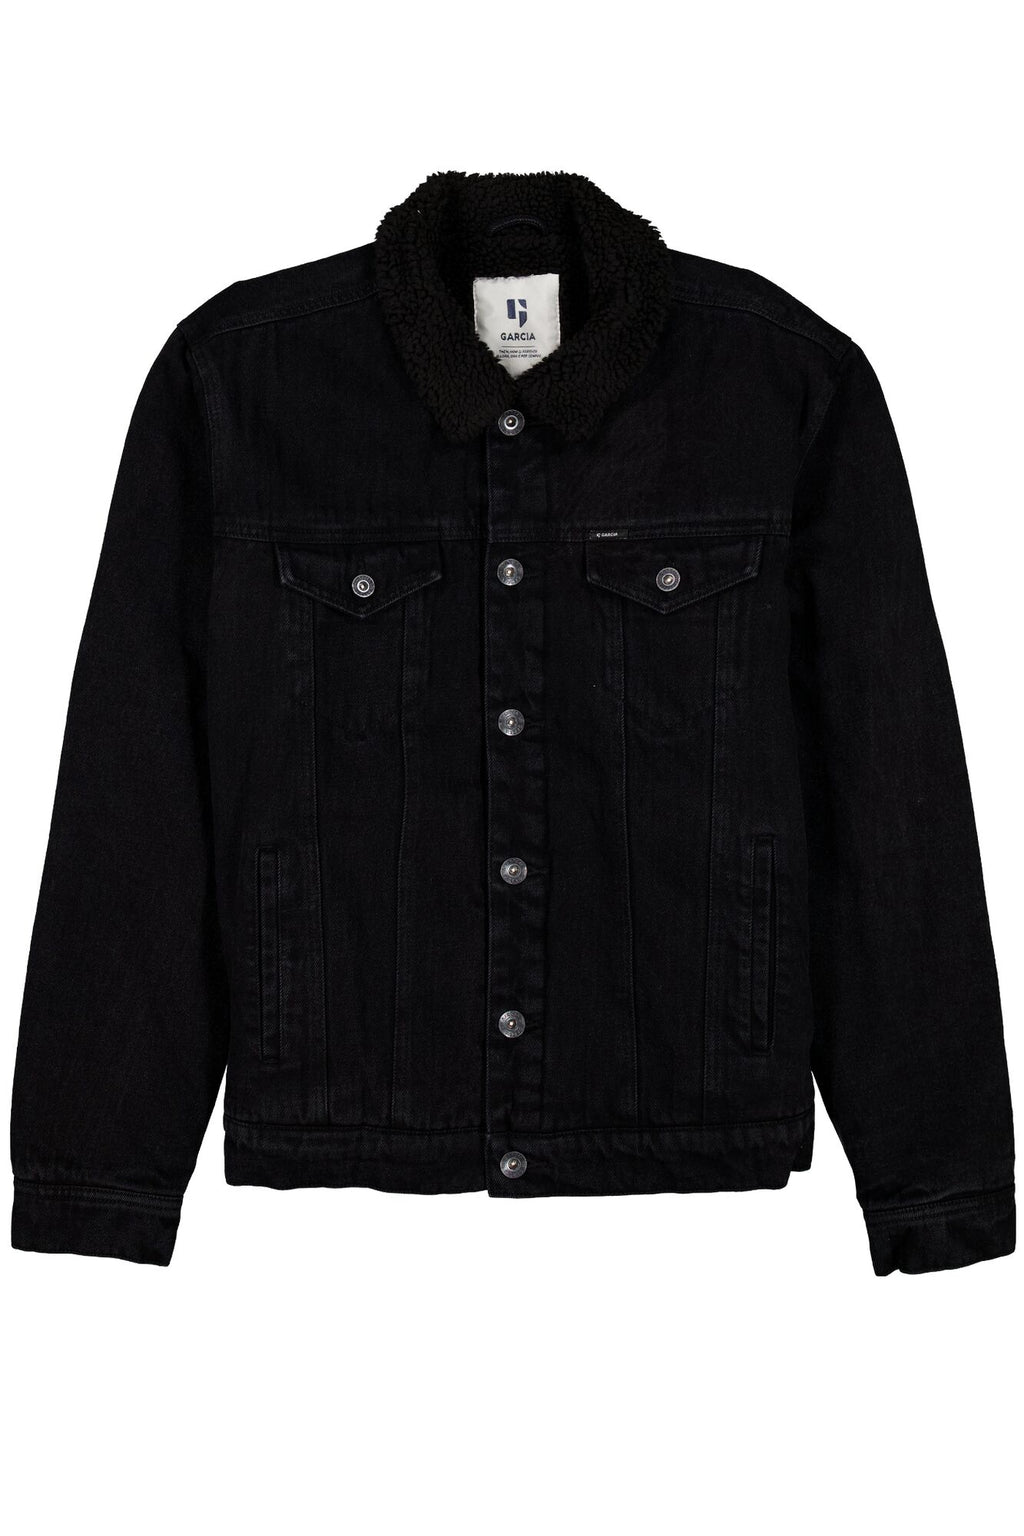 Outdoor Garcia Q23Menswear Black Jacket –